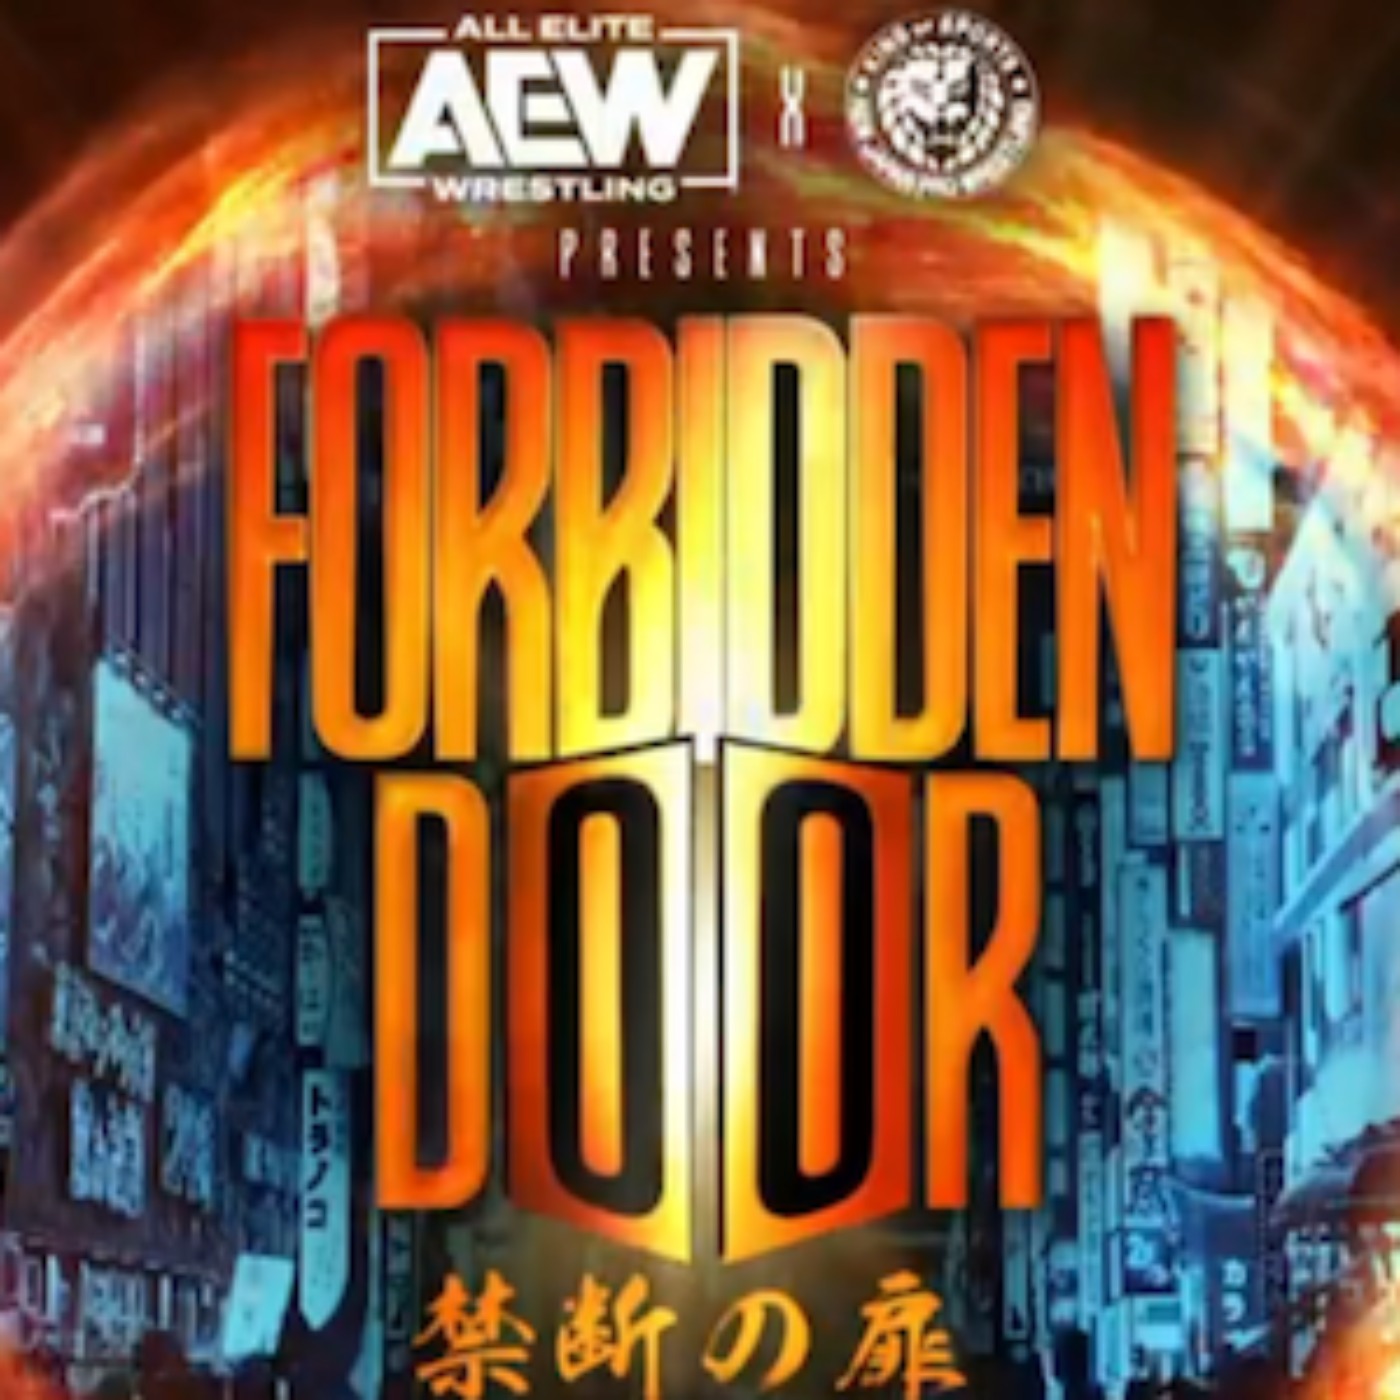 AEW's Forbidden Door Breakdown, Elias Returns & Controversial Jericho Comments - TheSportster Show Episode 12